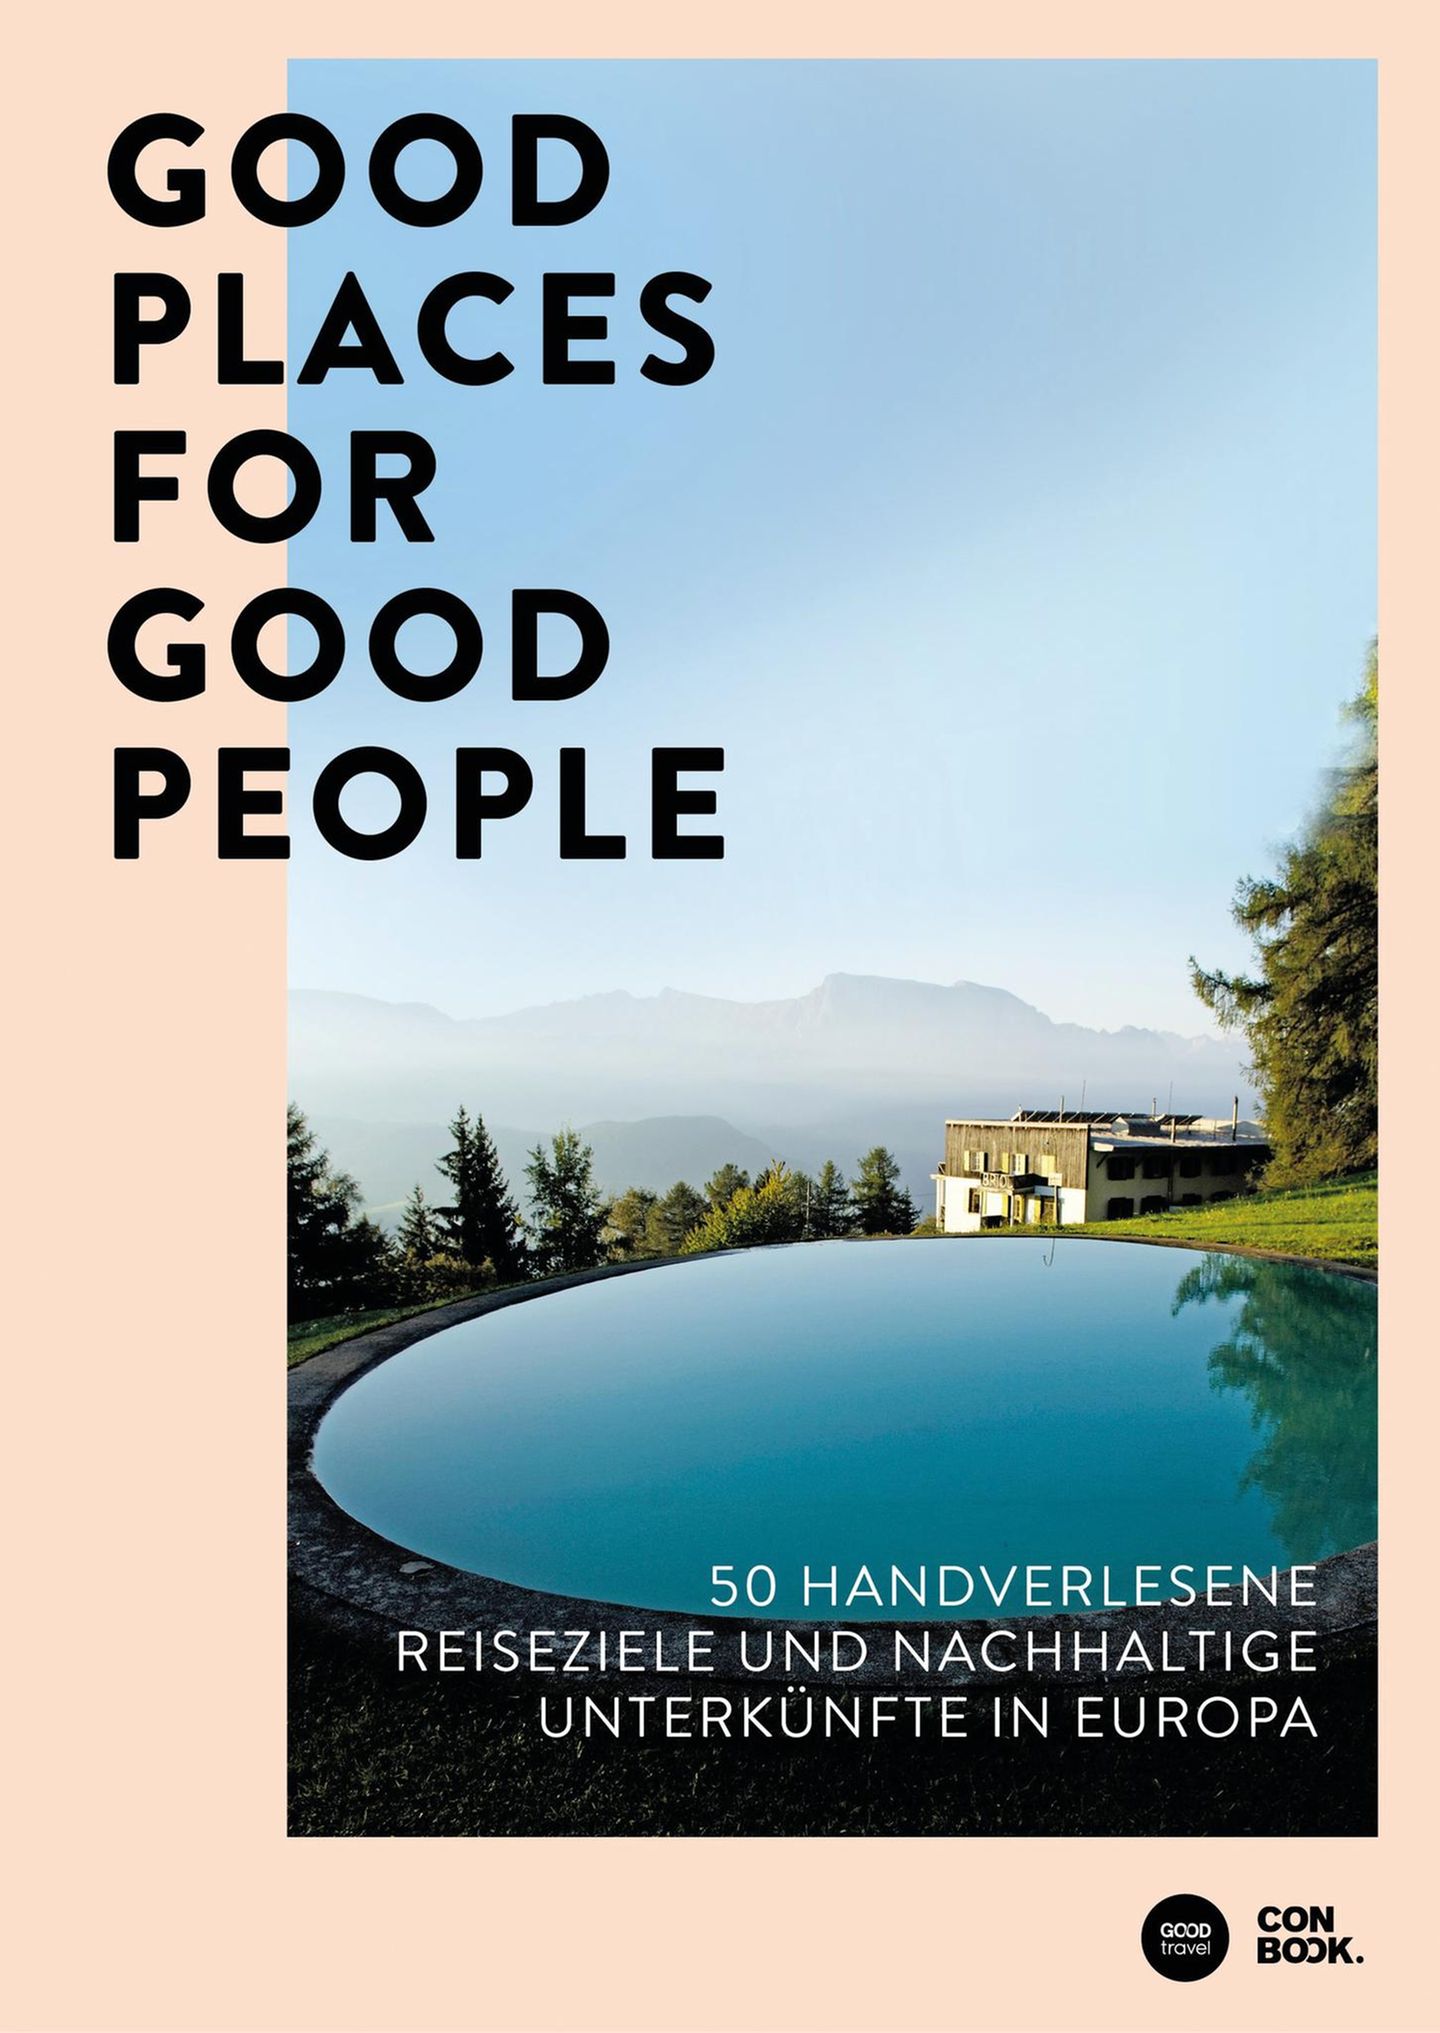 Alle Hoteltipps stammen aus dem Buch "Good Places for Good People - 50 handverlesene Reiseziele und nachhaltige Unterkünfte in Europa" von Franziska Diallo und Judith Hehl (Conbook Verlag, 24,95 Euro).